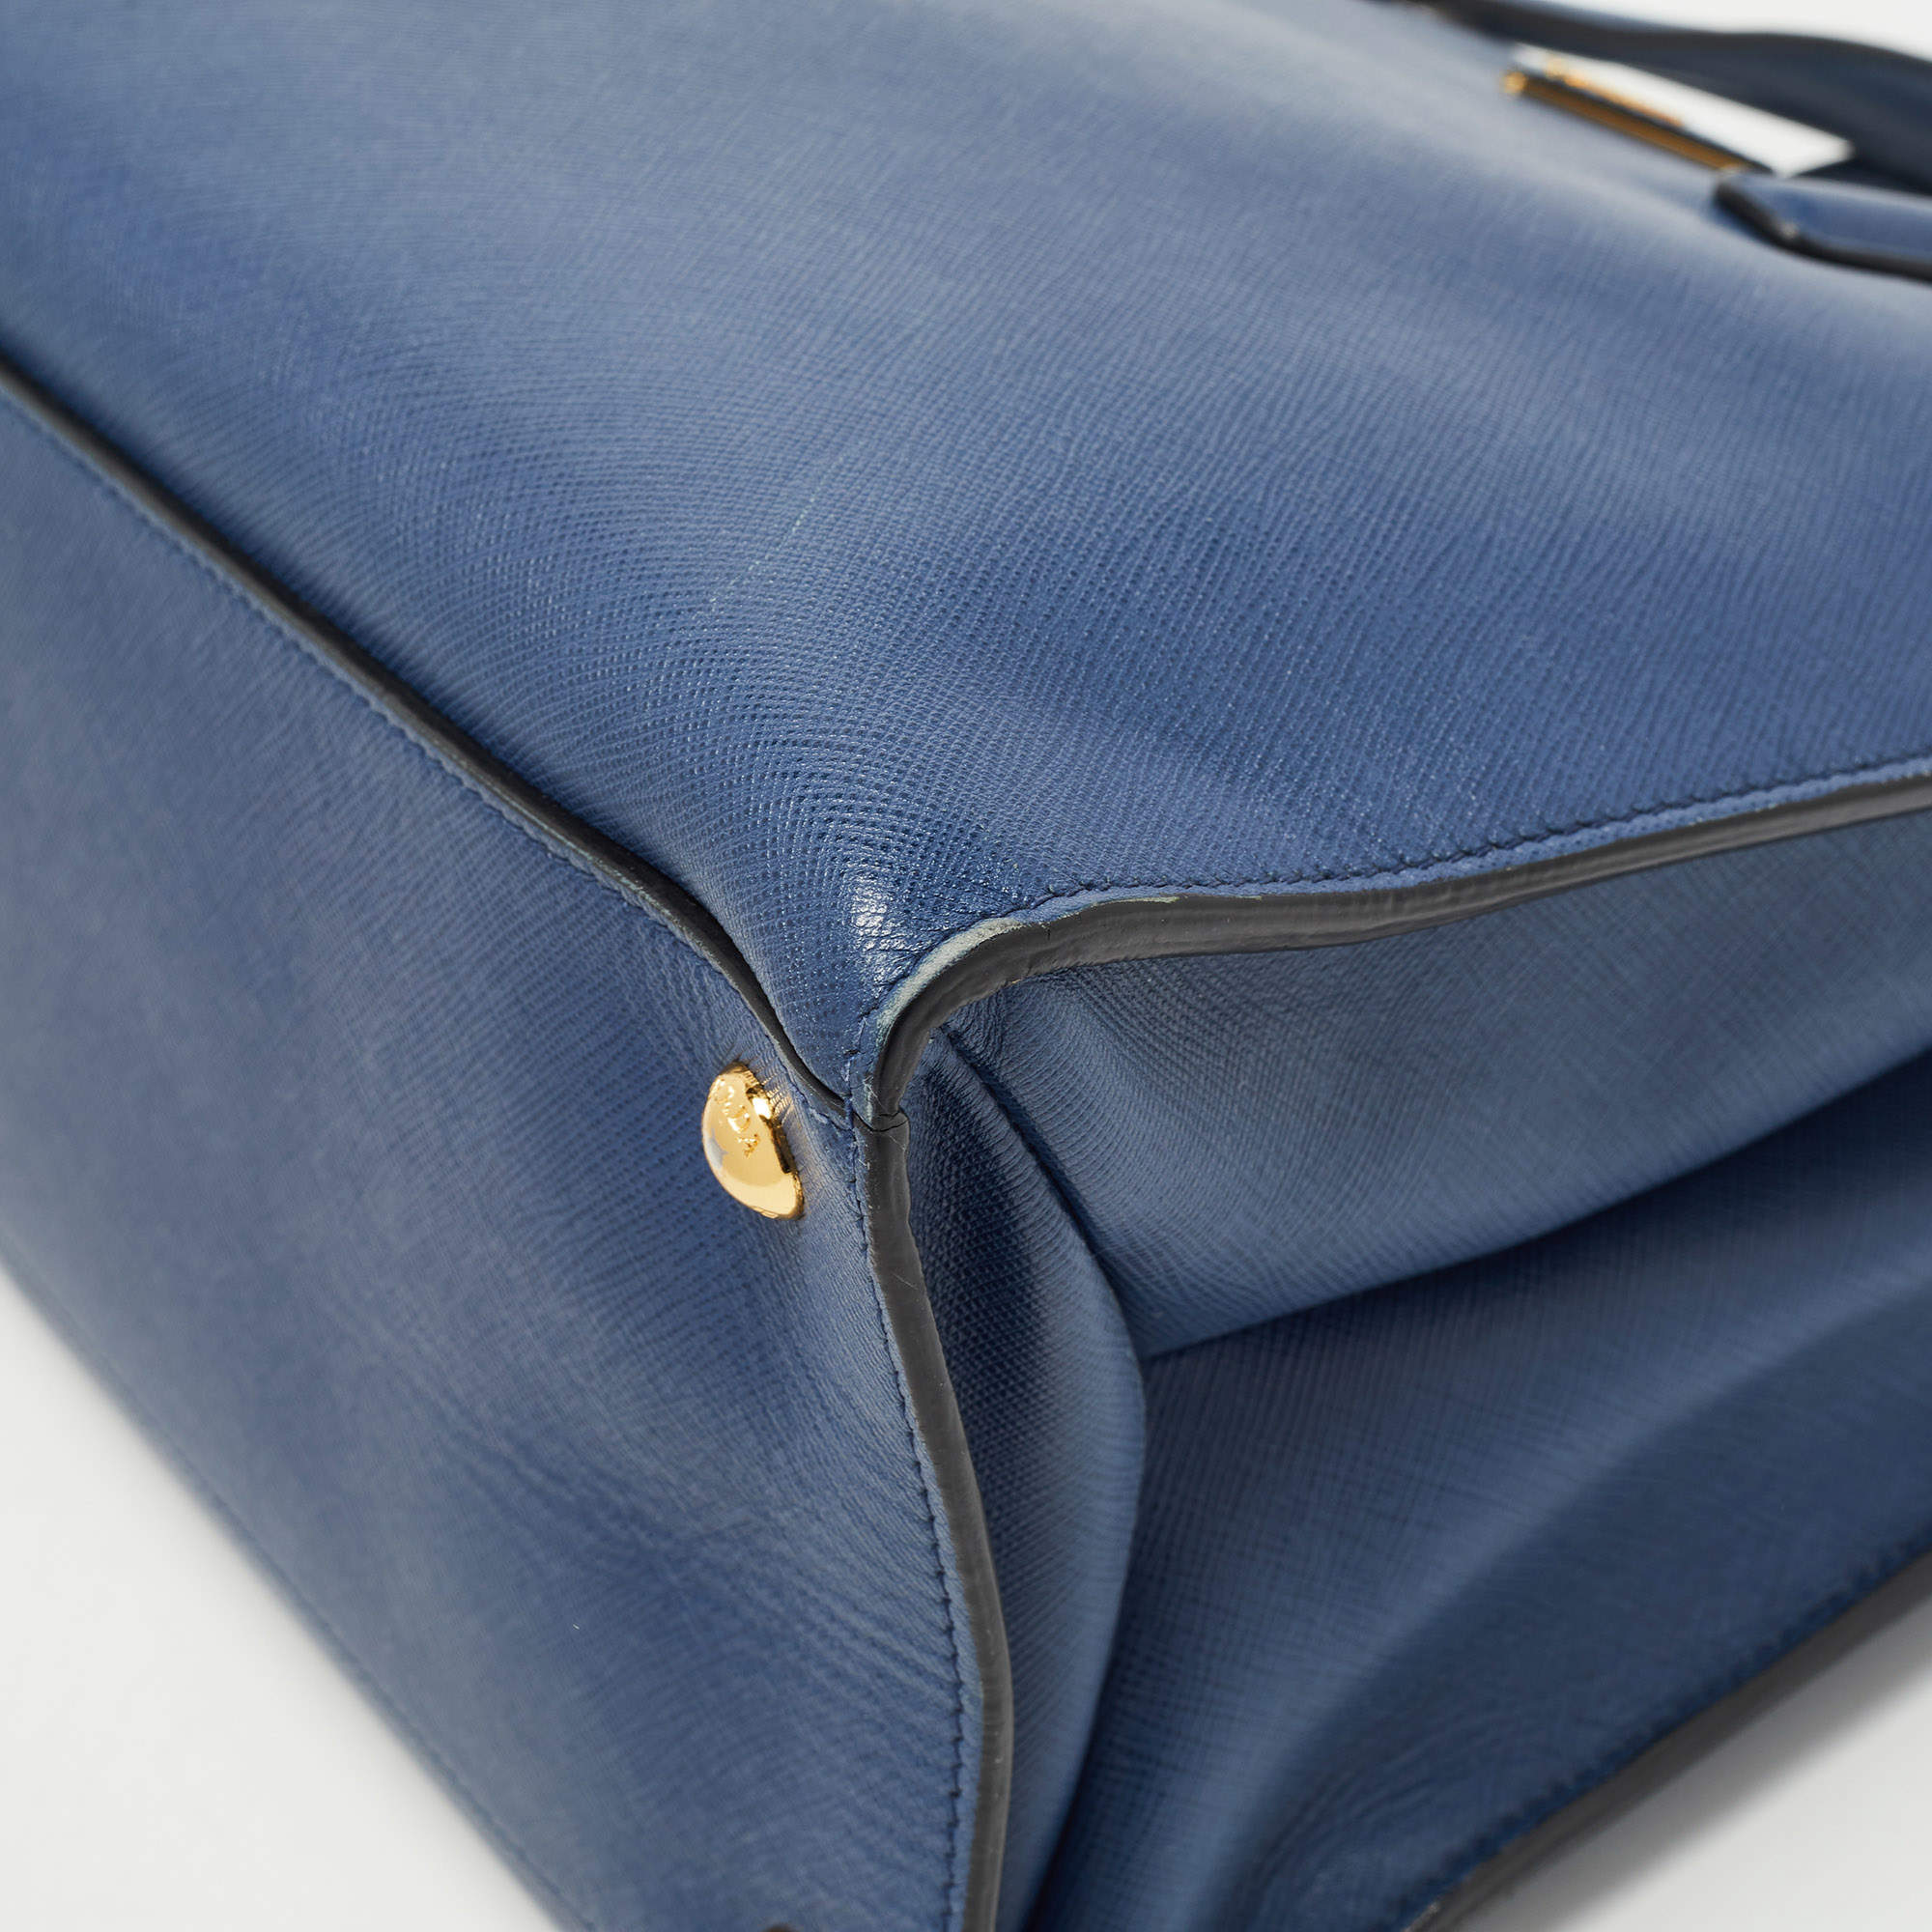 Prada Saffiano Leather Blue Clutch Bag – The Hosta